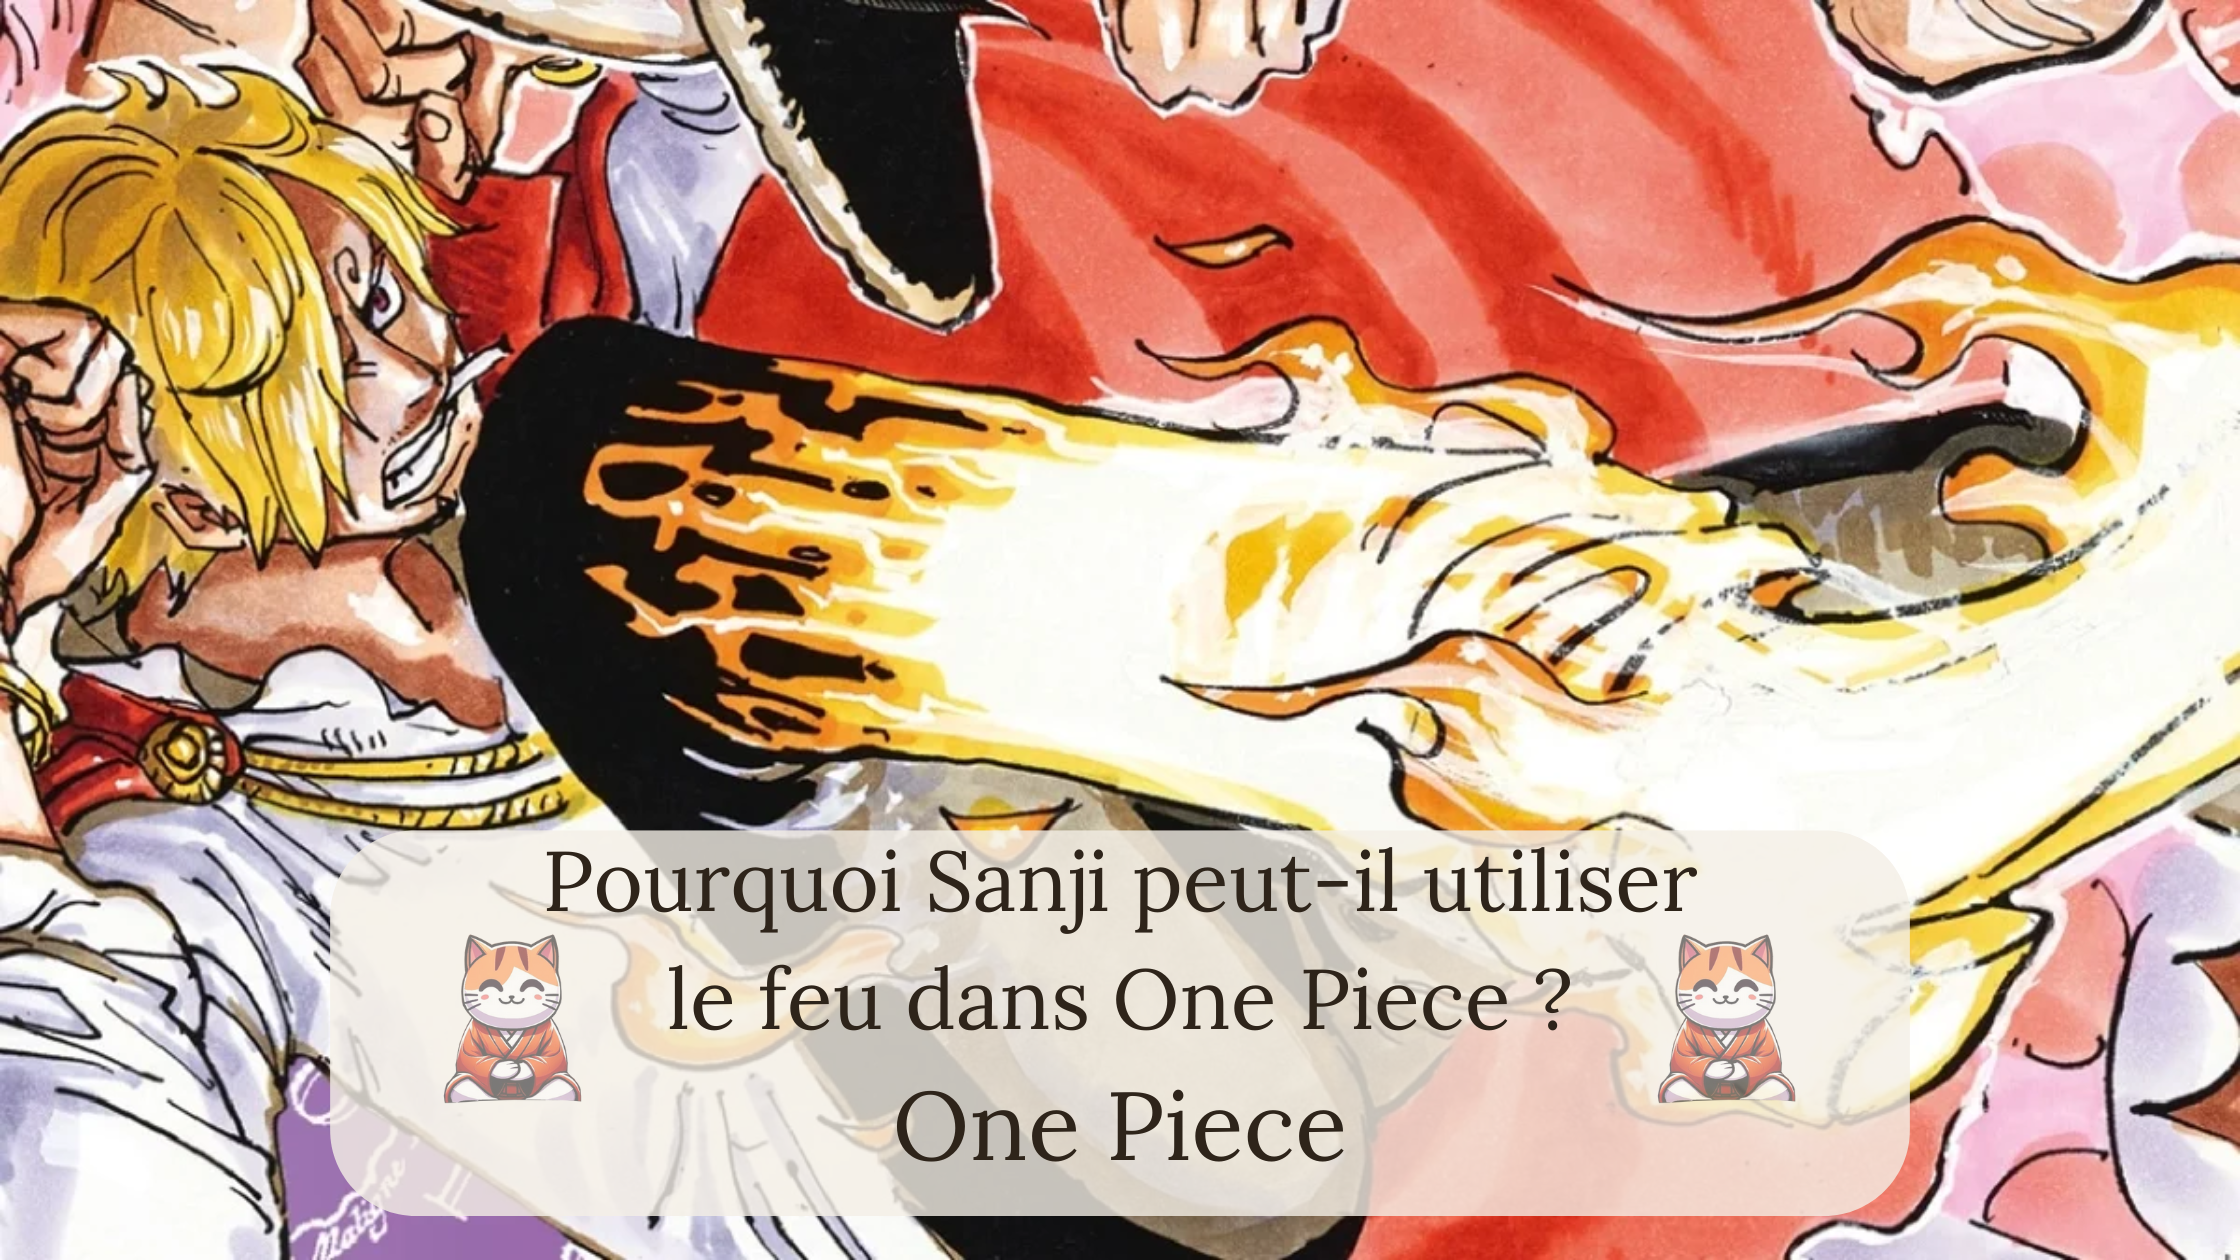 Pourquoi Sanji peut-il utiliser le feu dans One Piece ?